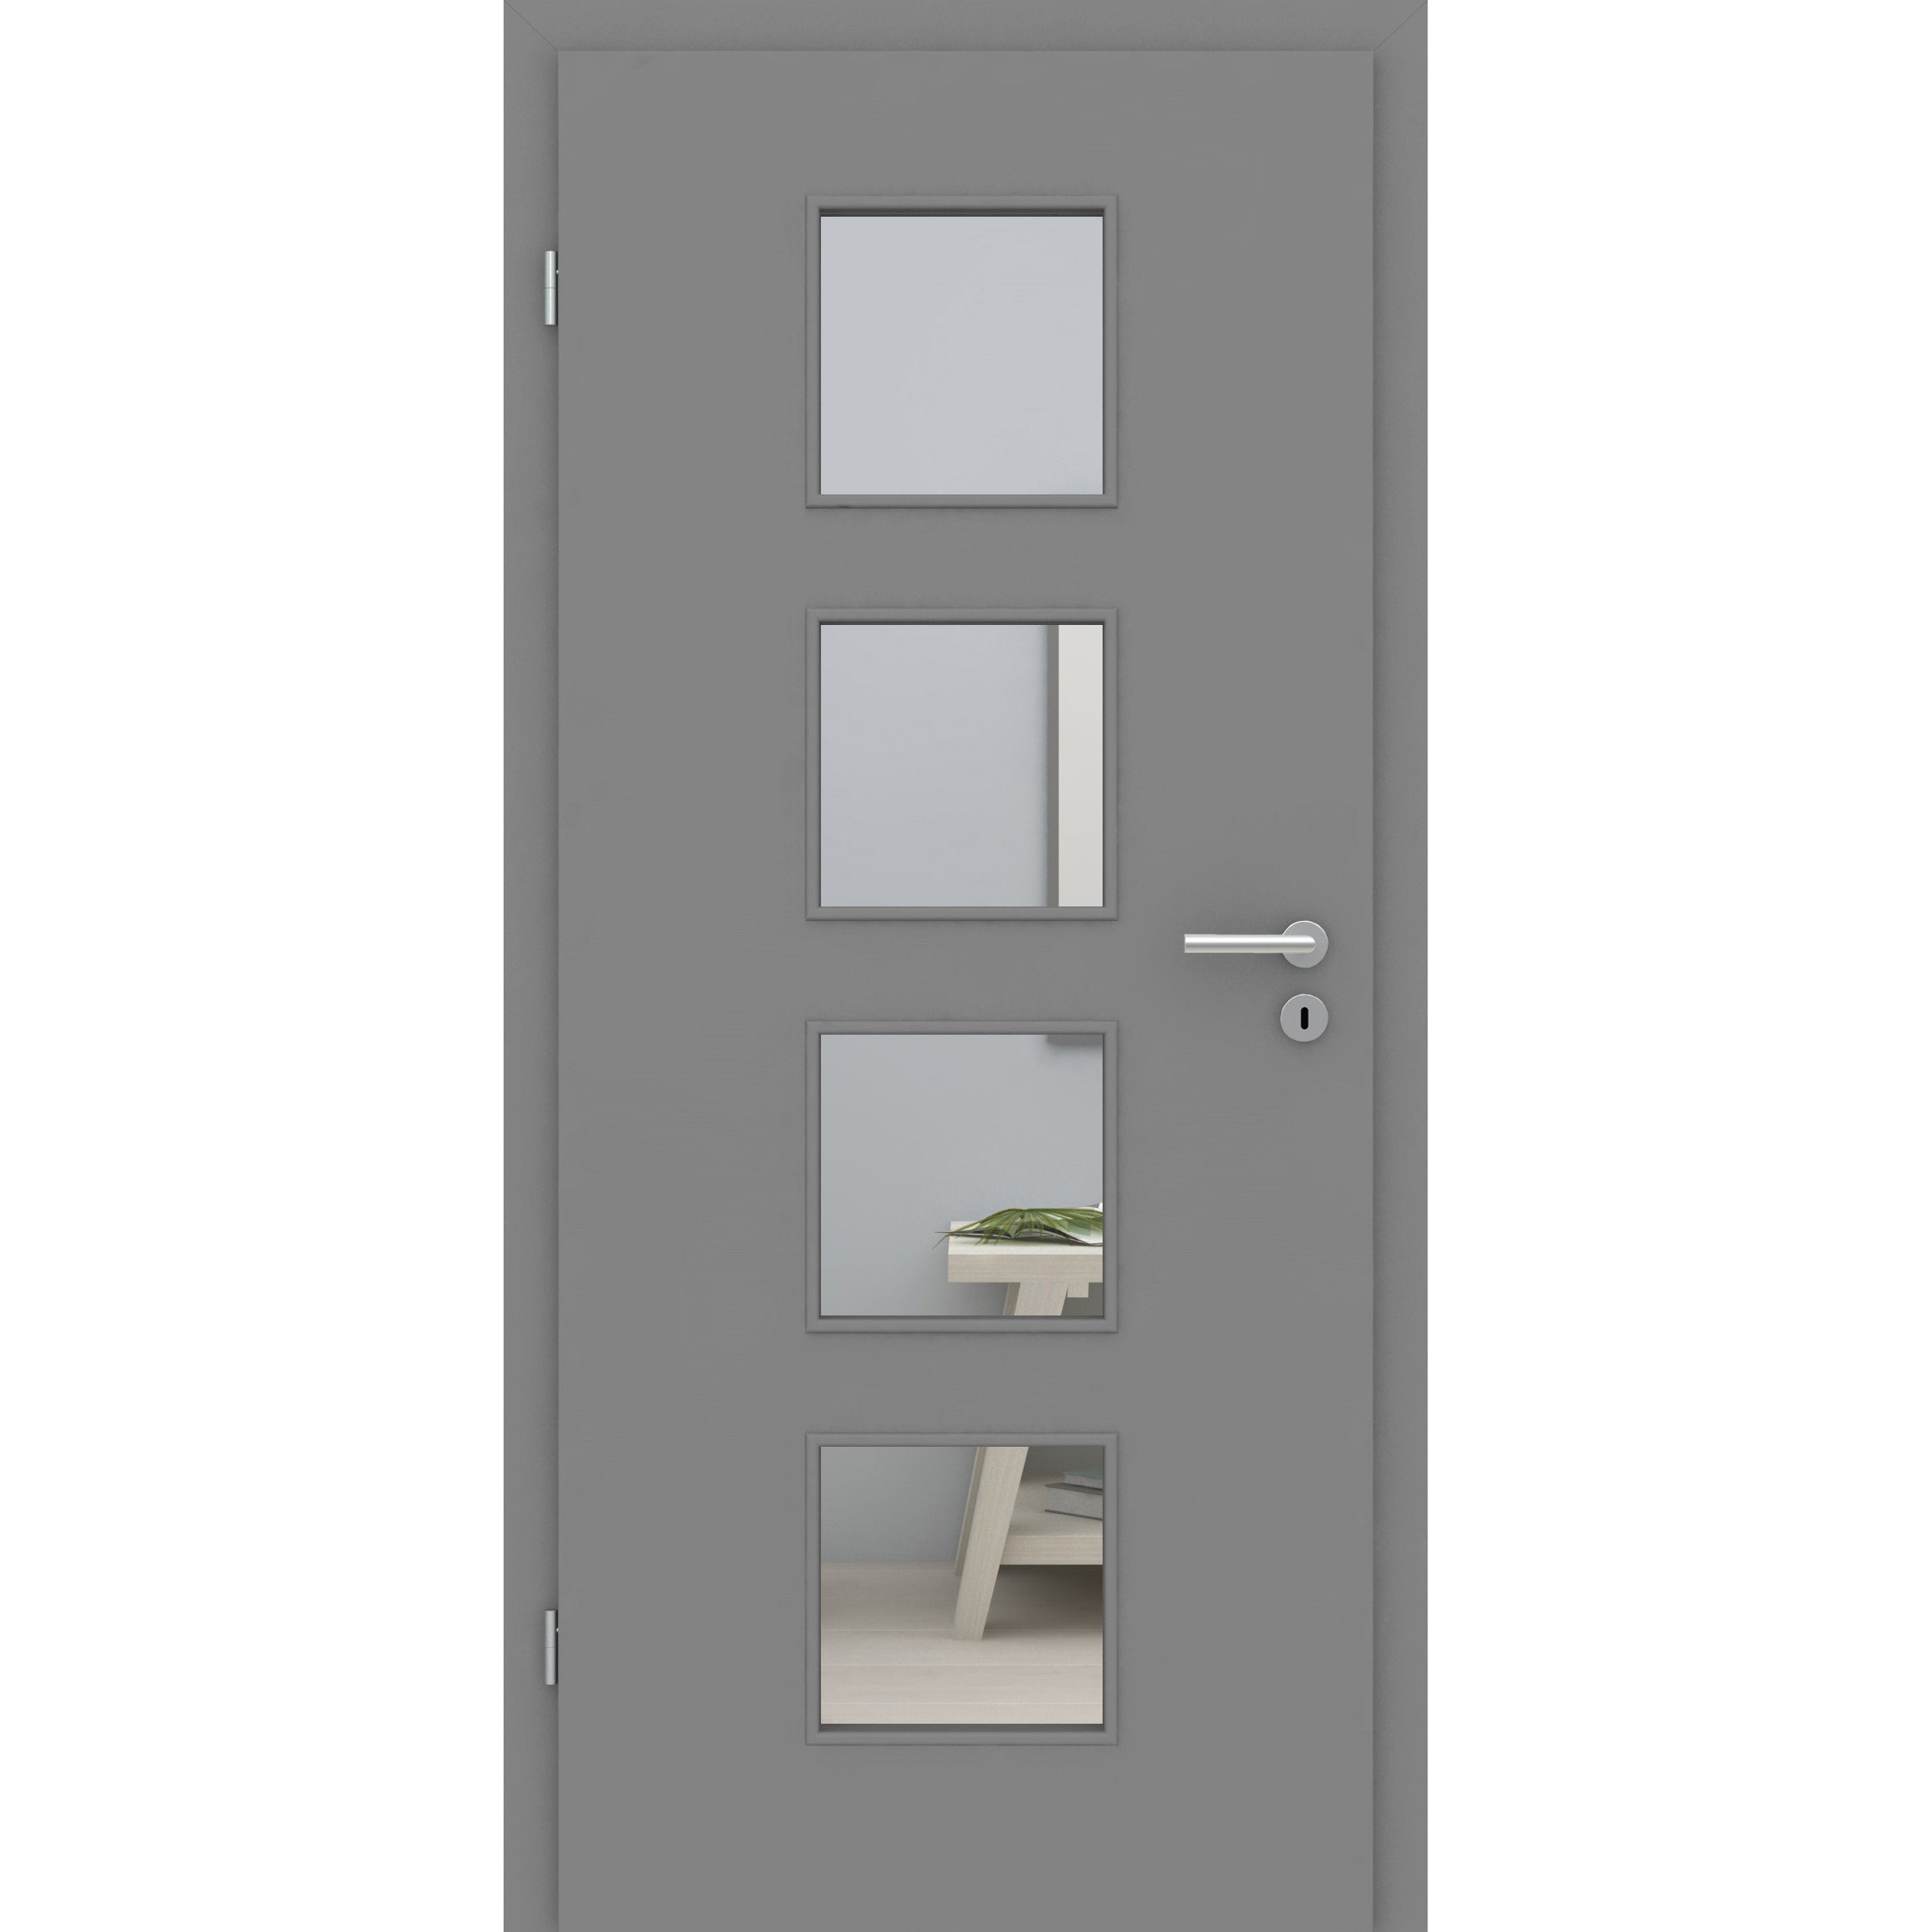 Zimmertür mit Lichtausschnitt grau glatt Designkante - Modell LA4